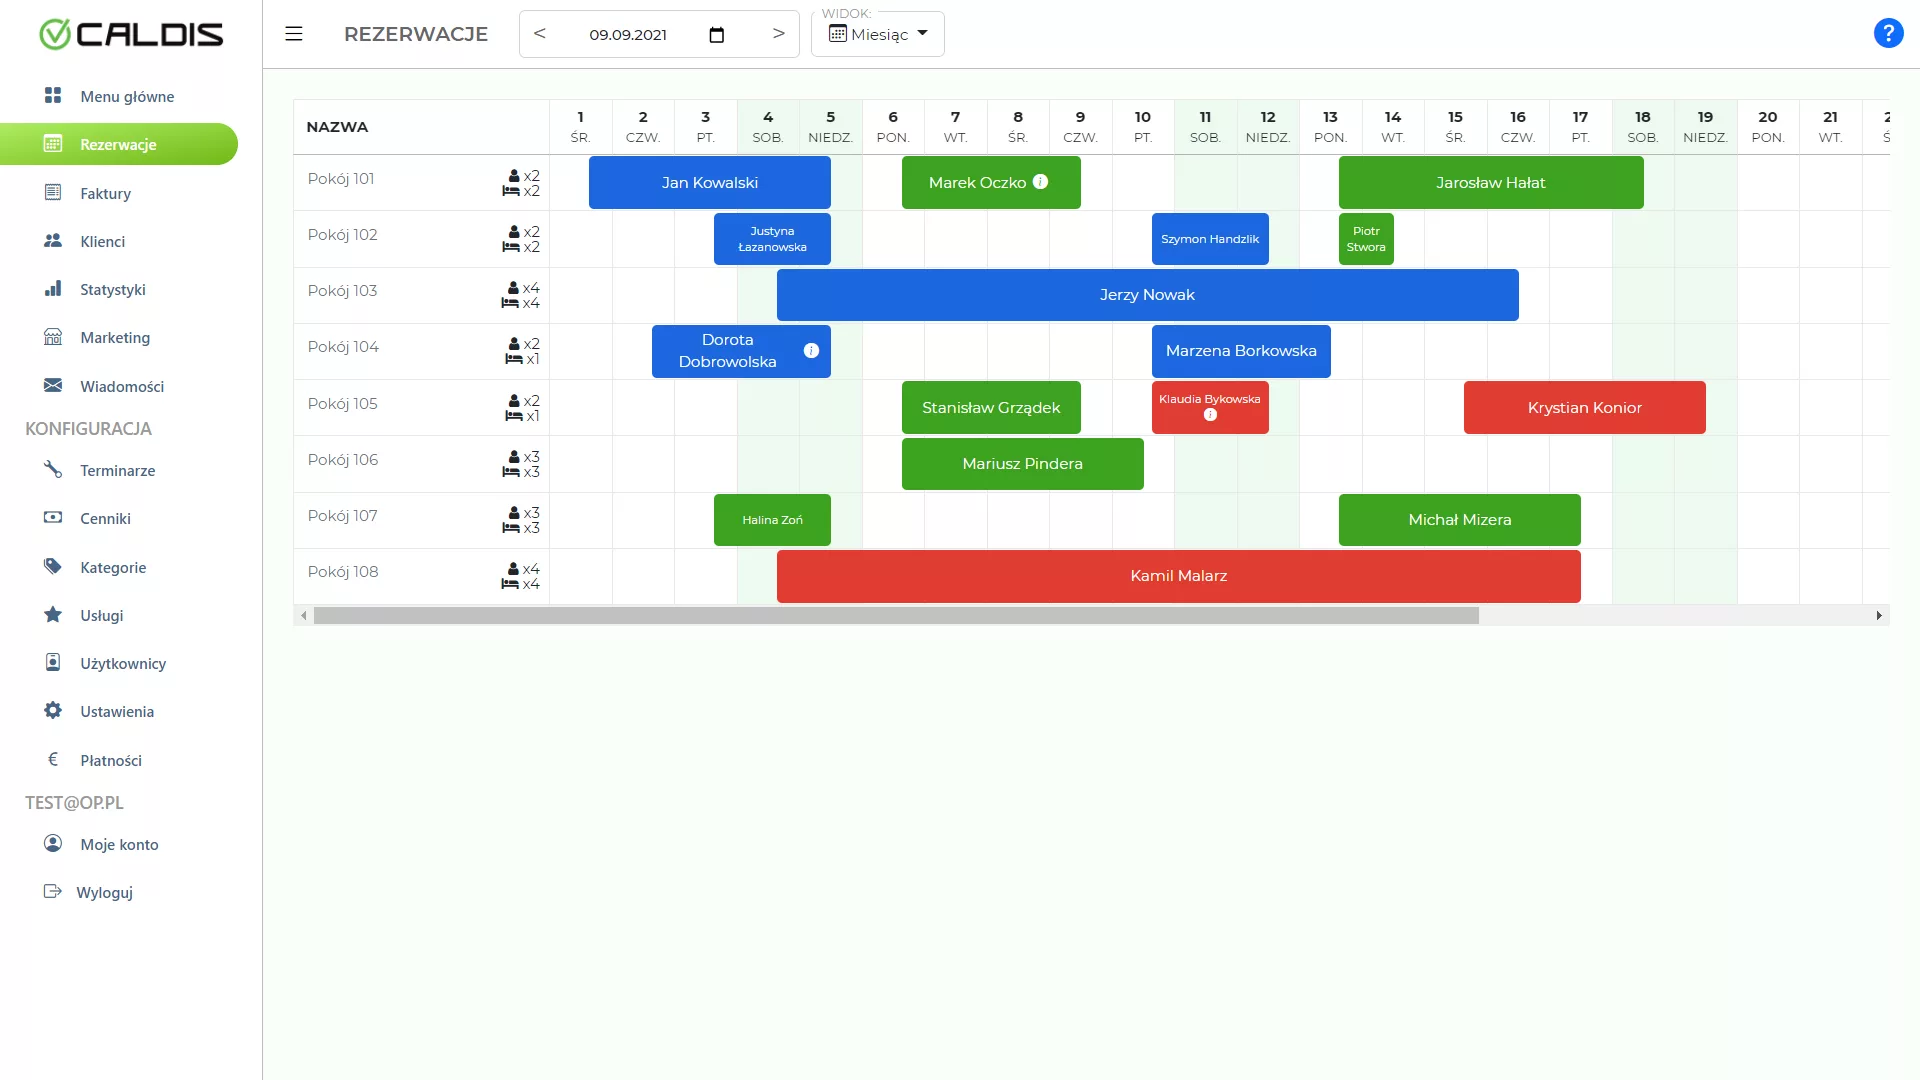 Kalendarz rezerwacji z aplikacji CALDIS